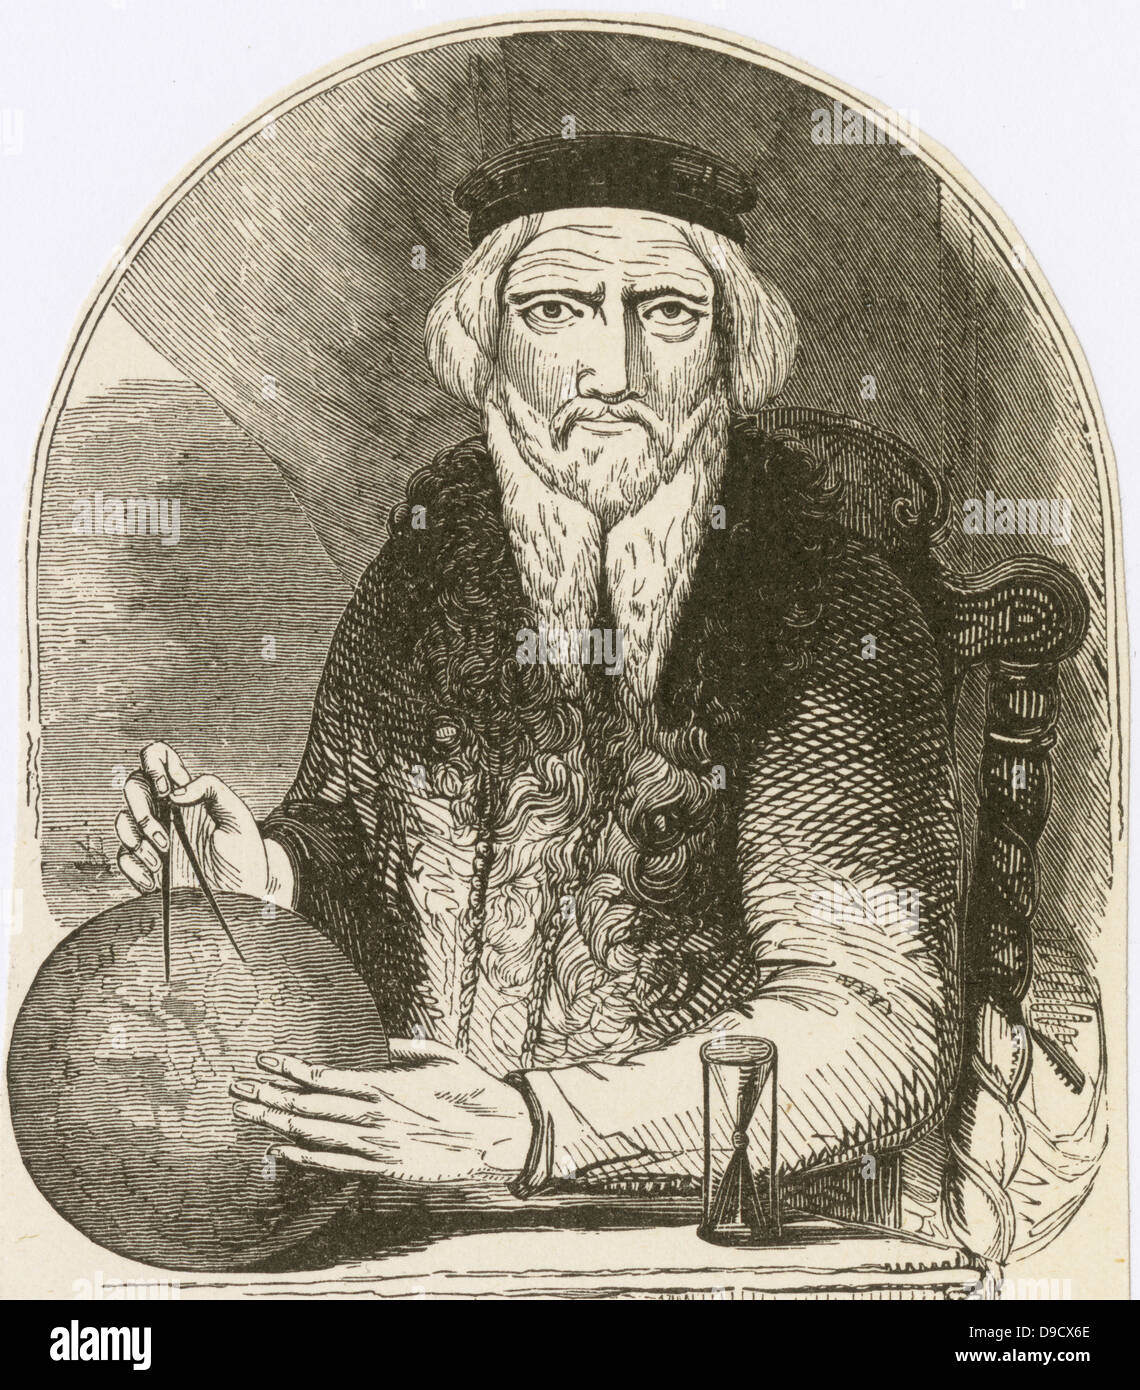 Sebastian Cabot (C1474-c1557) navigatore veneziano e cartografo, figlio di John Cabot. Foto Stock